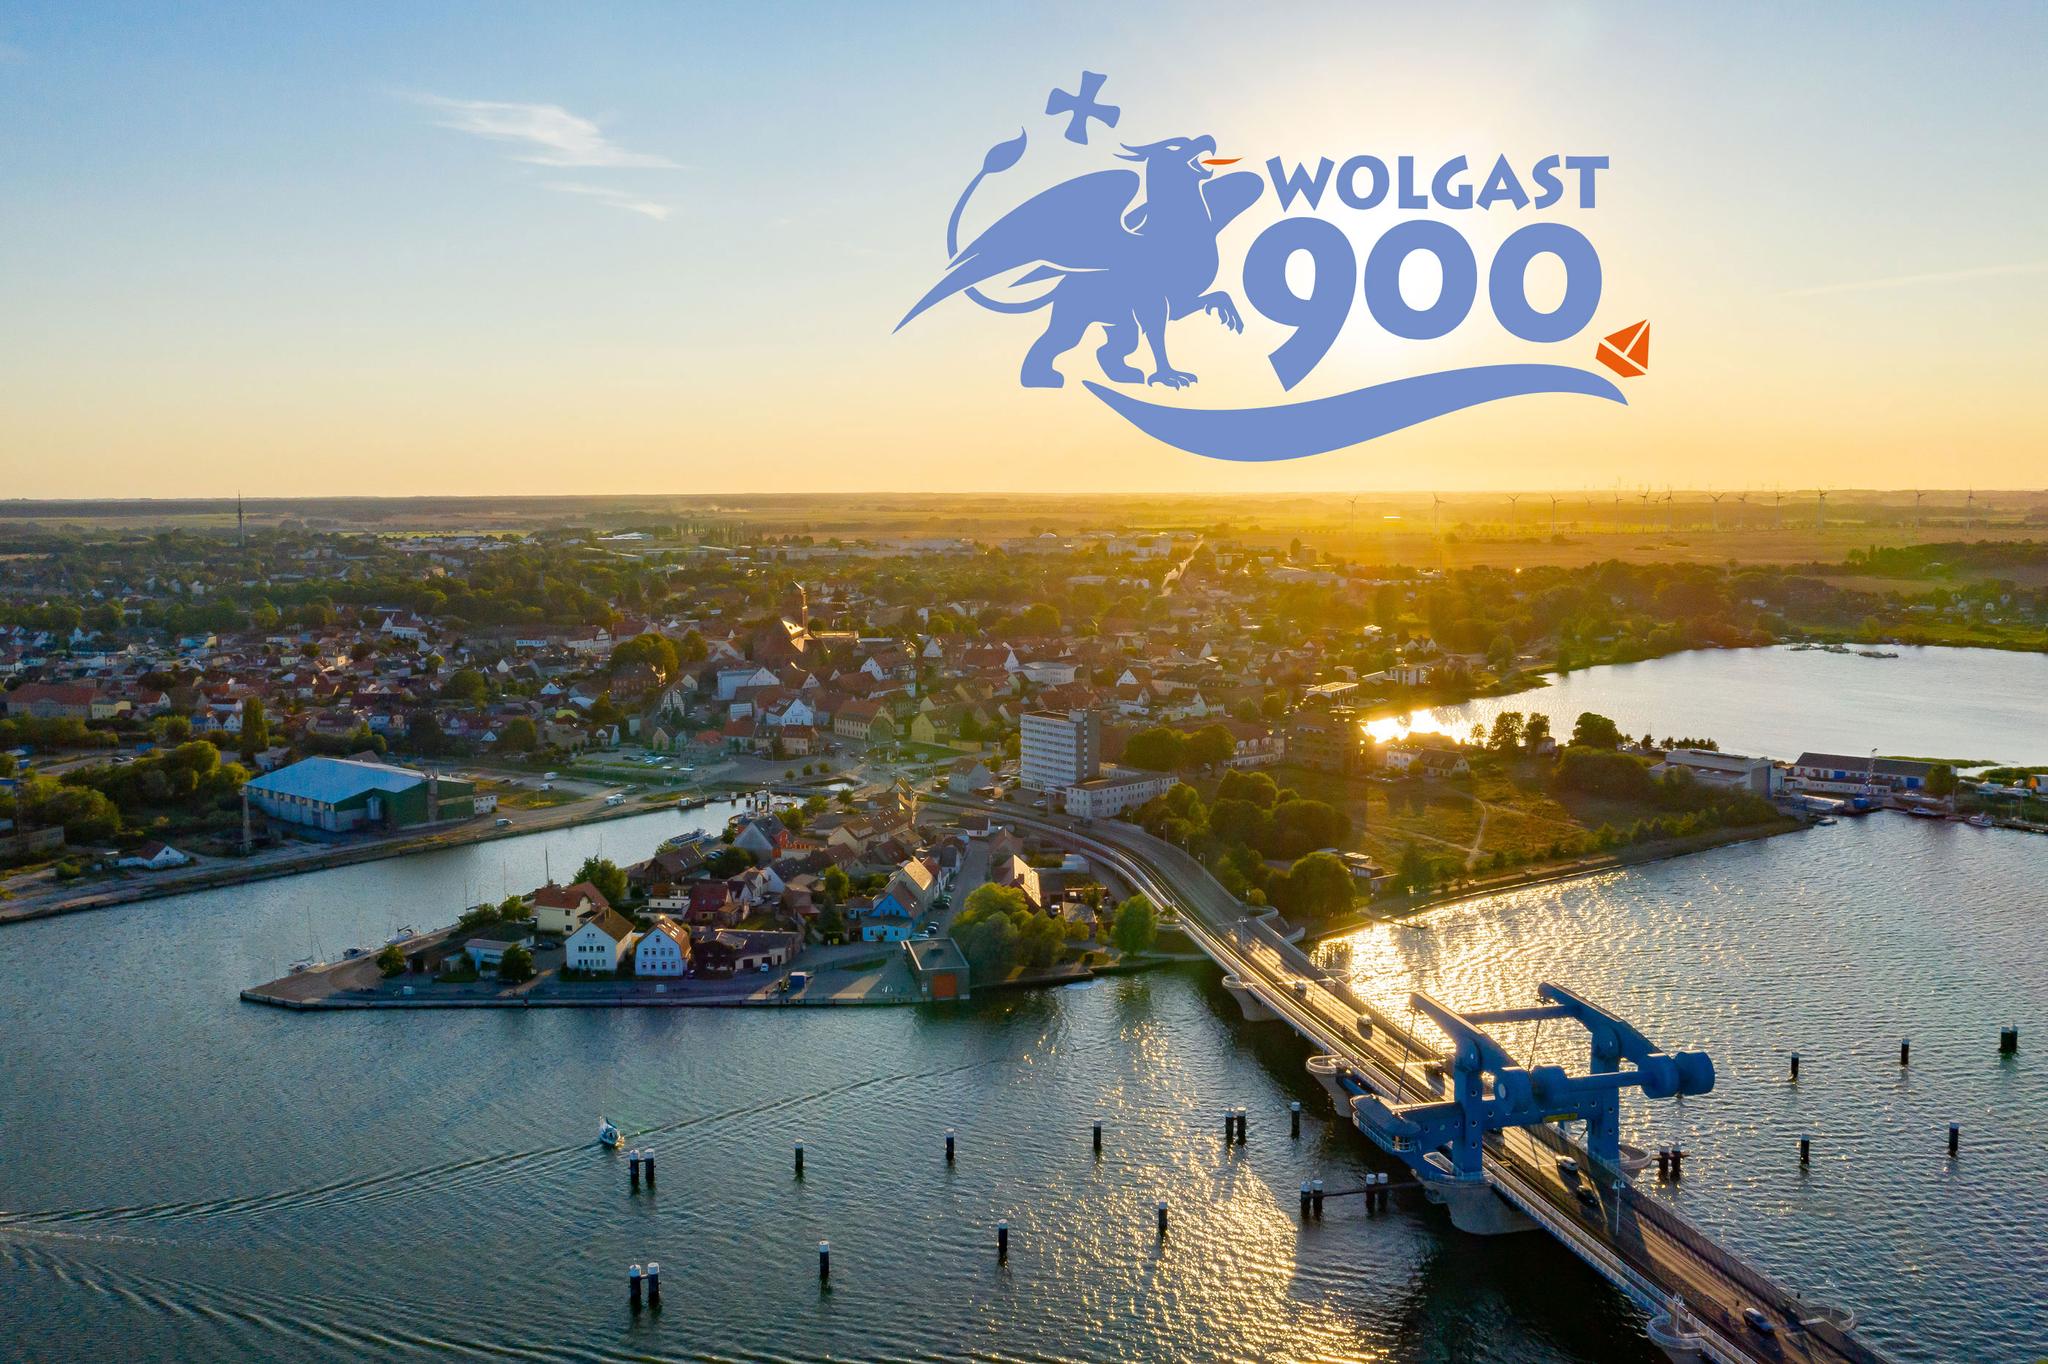 Peenebrücke Wolgast von oben, mit Sicht auf Wolgast, mit Wolgast900 Logo